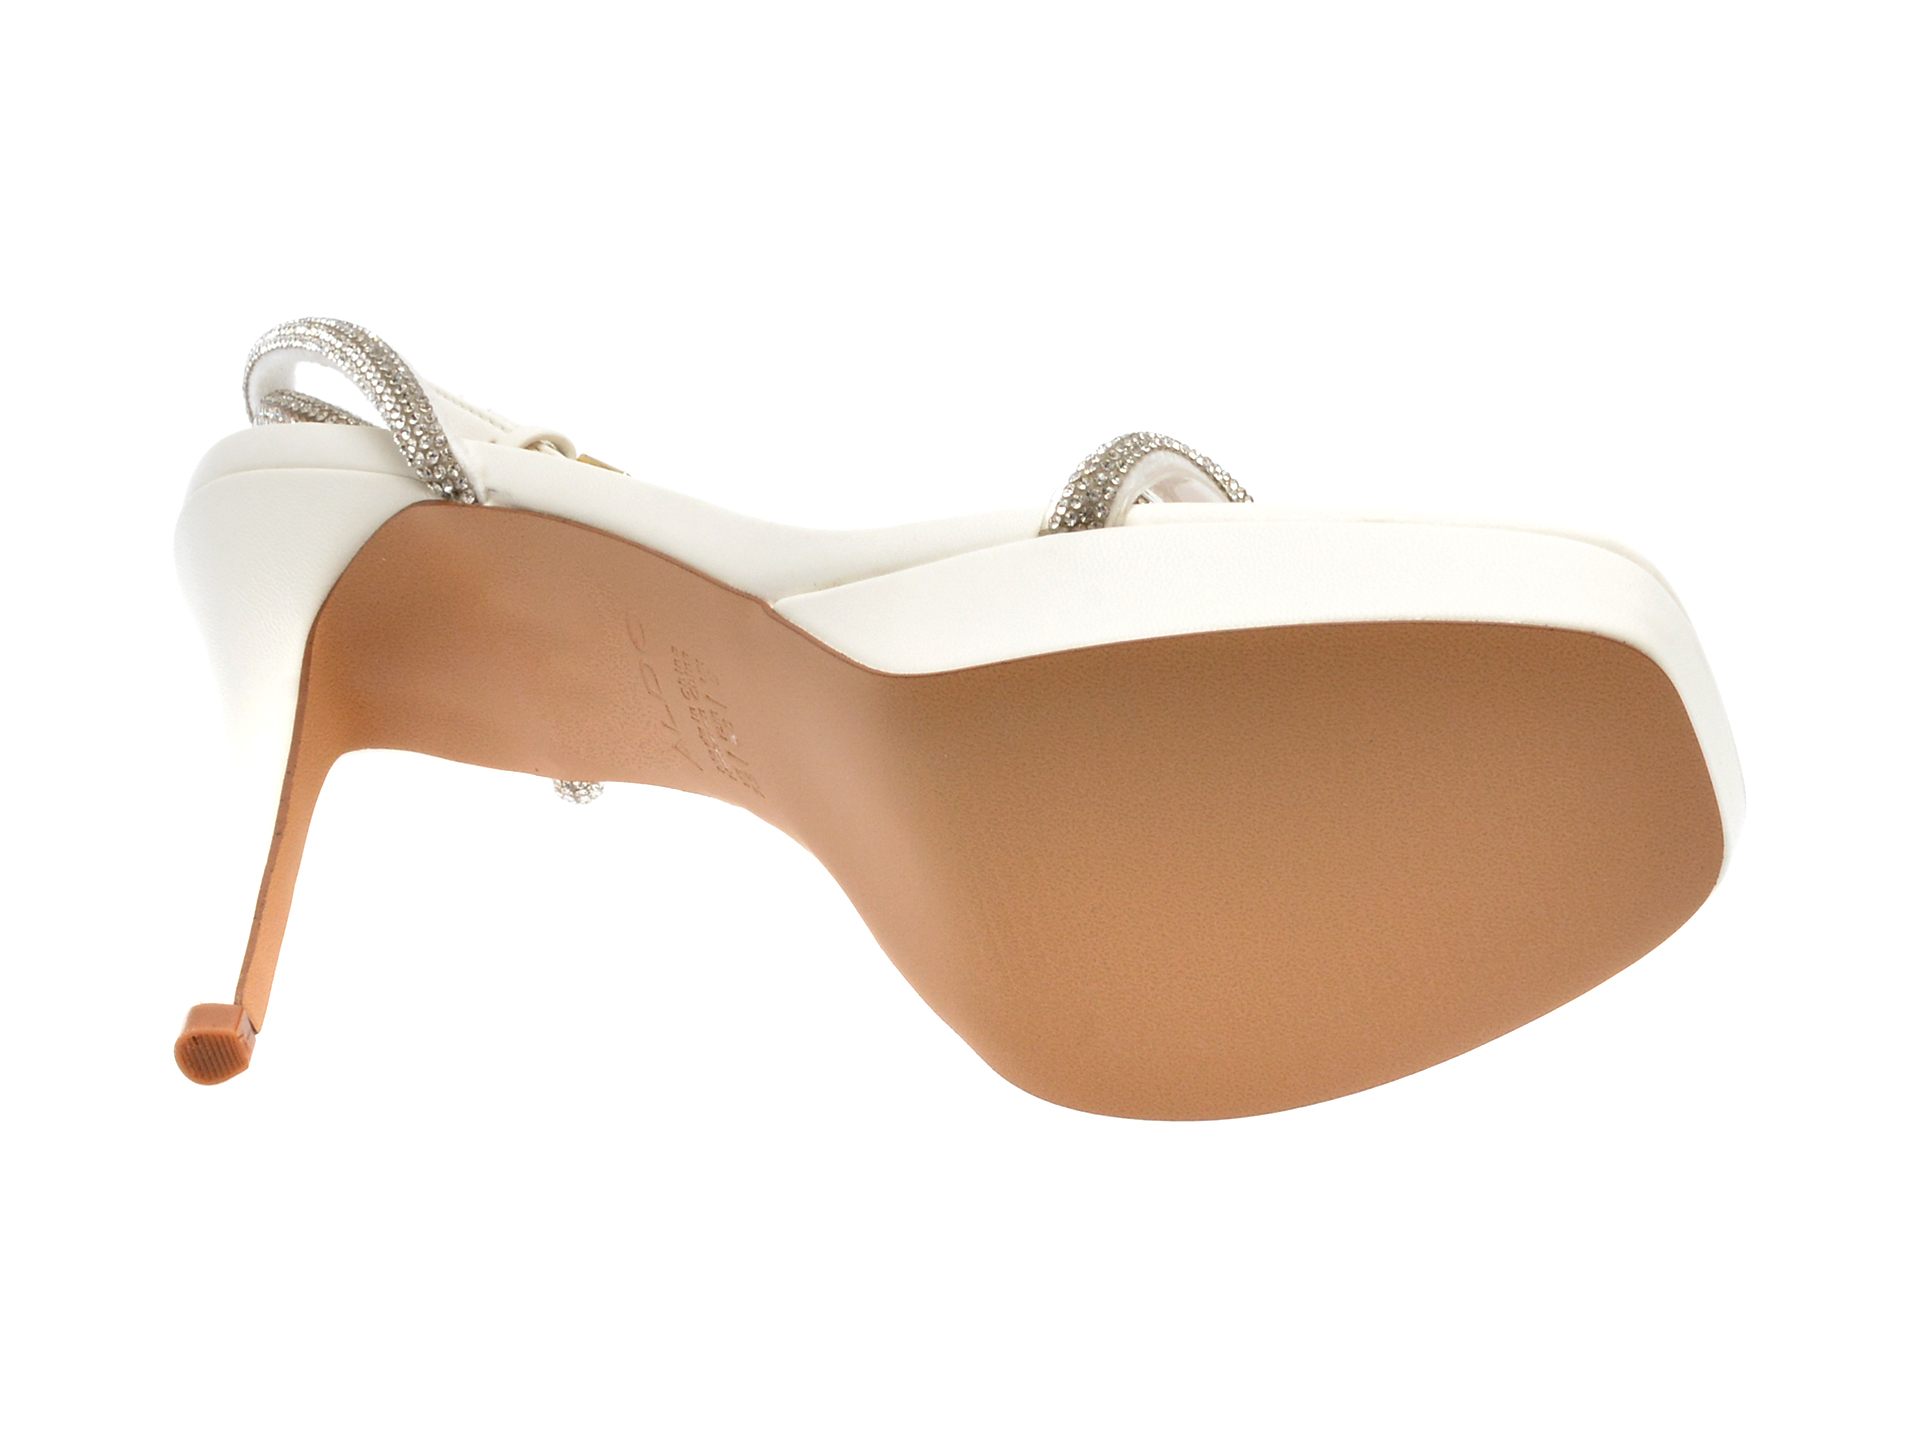 Sandale ALDO albe, DOMENICA100, din material textil